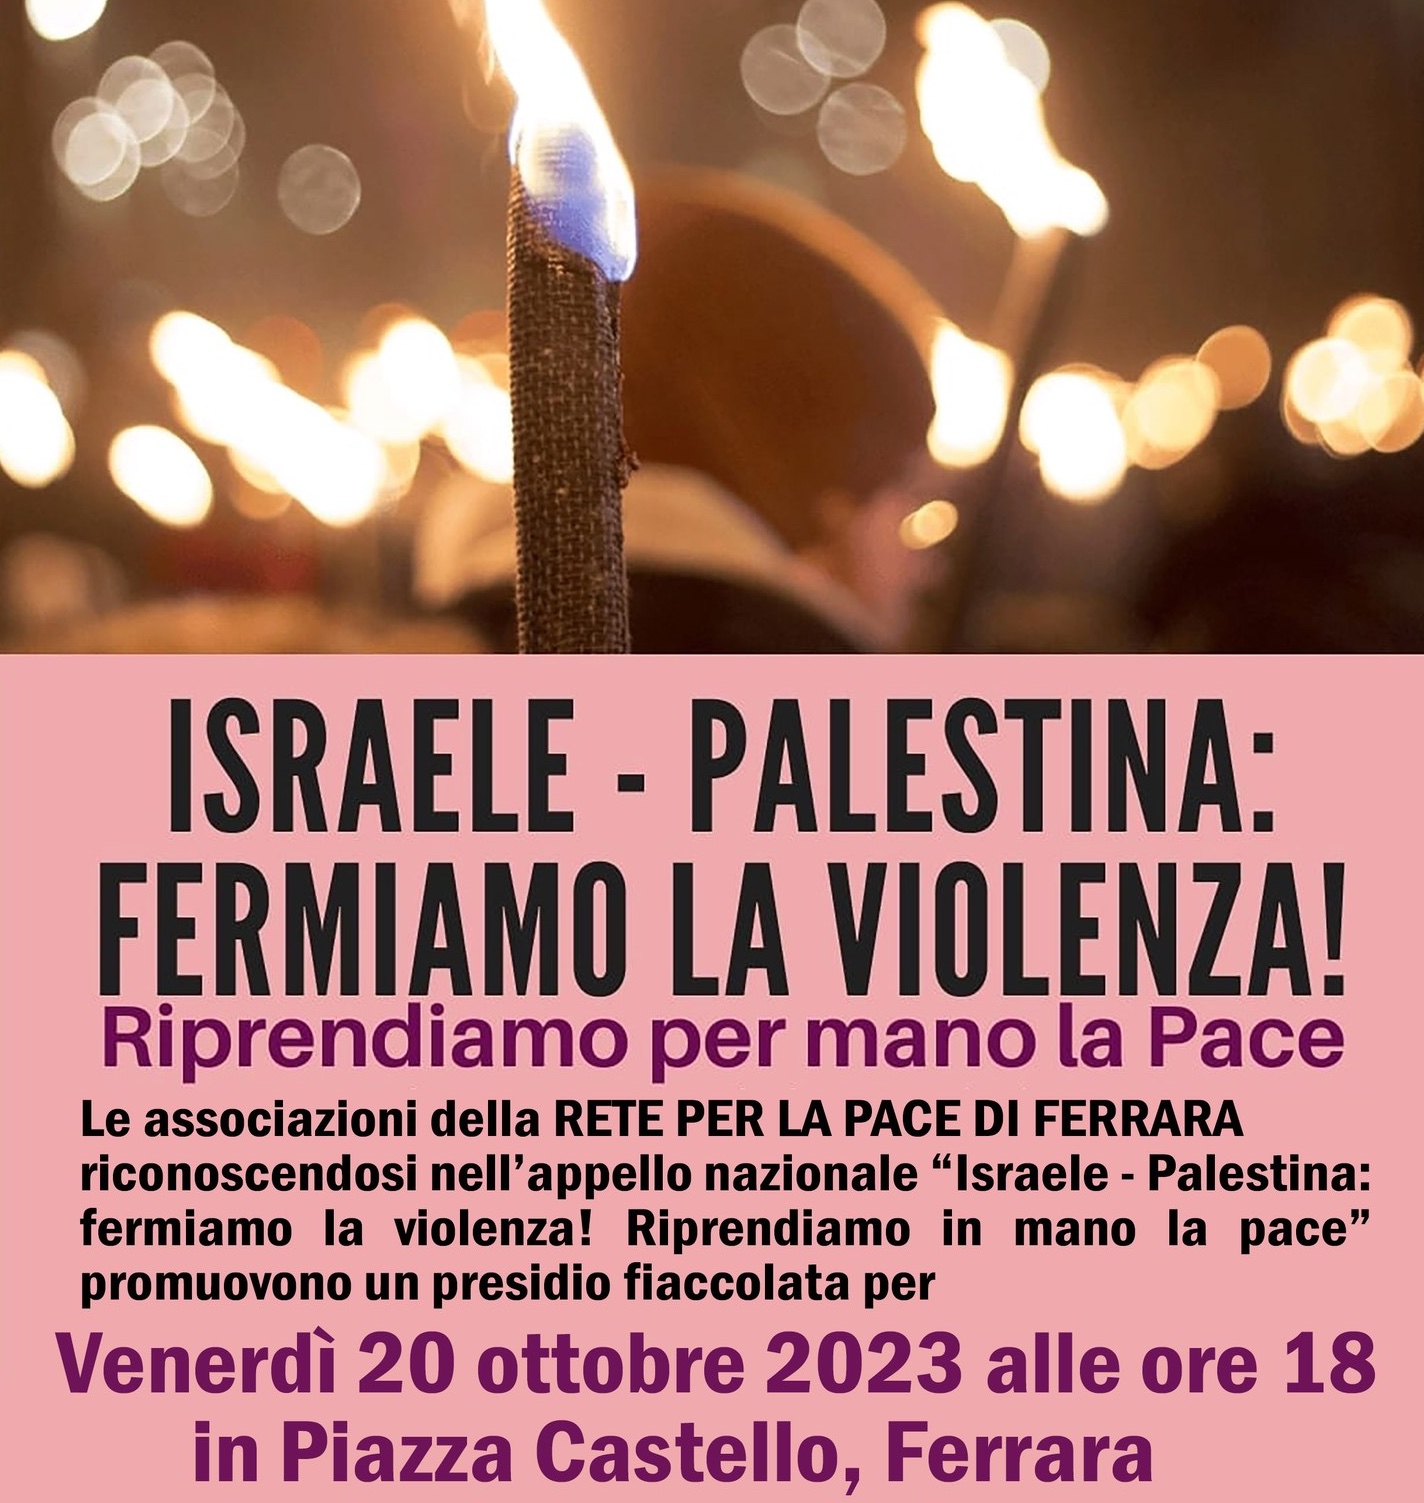 Fermare la violenza in Israele e Palestina e riprendere in mano la pace, a Ferrara